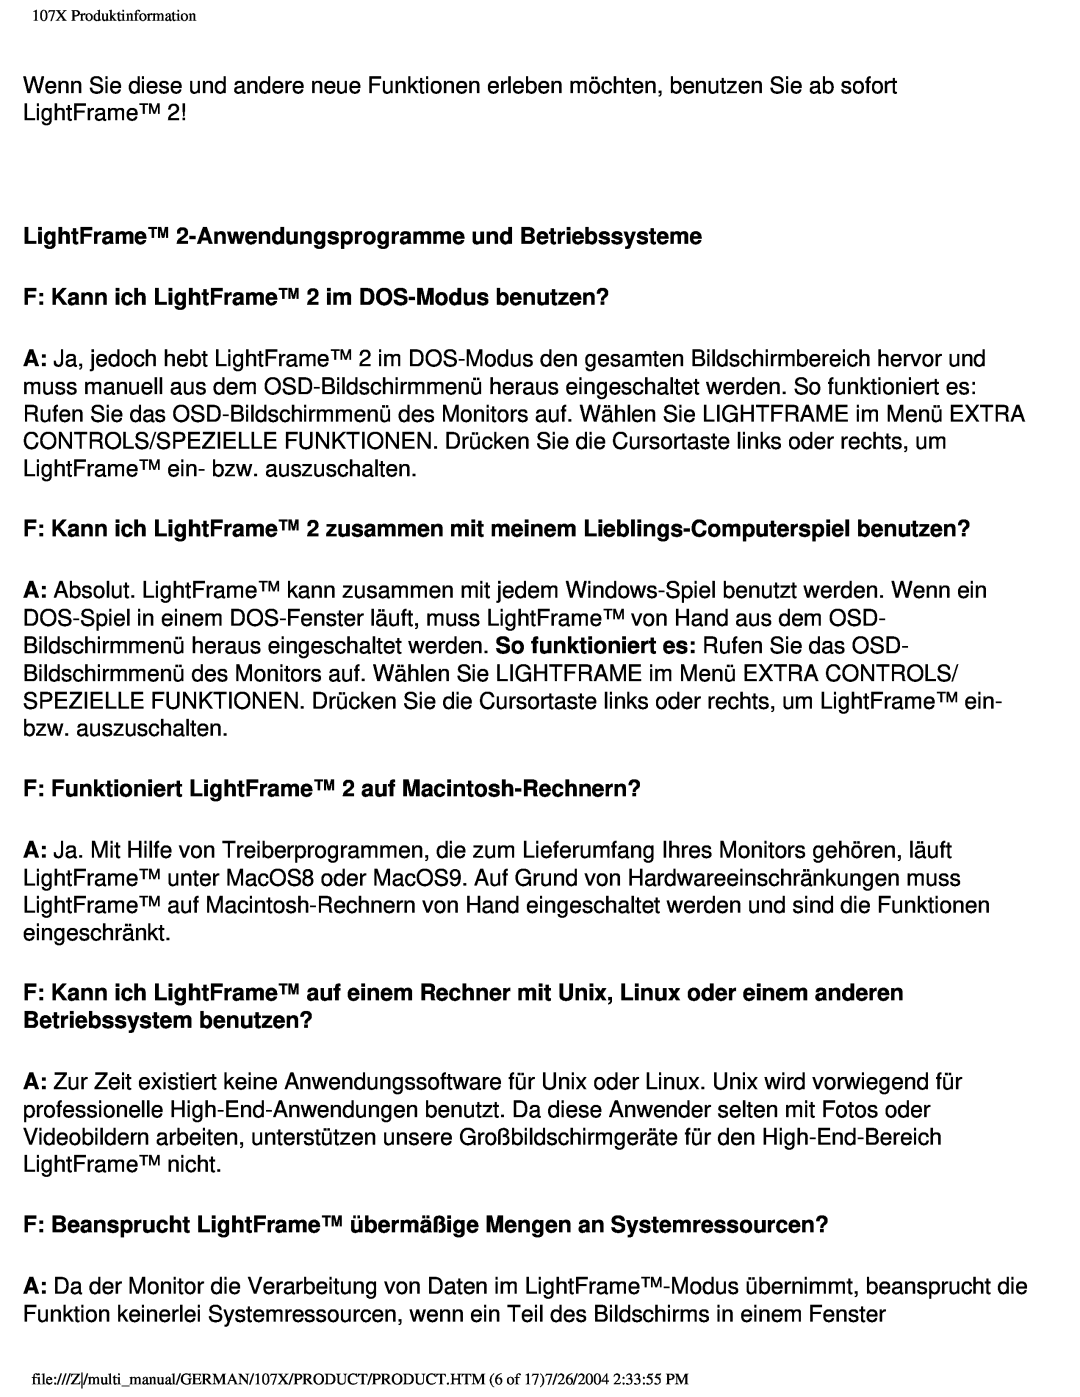 Philips 107X2 LightFrame 2-Anwendungsprogramme und Betriebssysteme, F Kann ich LightFrame 2 im DOS-Modus benutzen? 